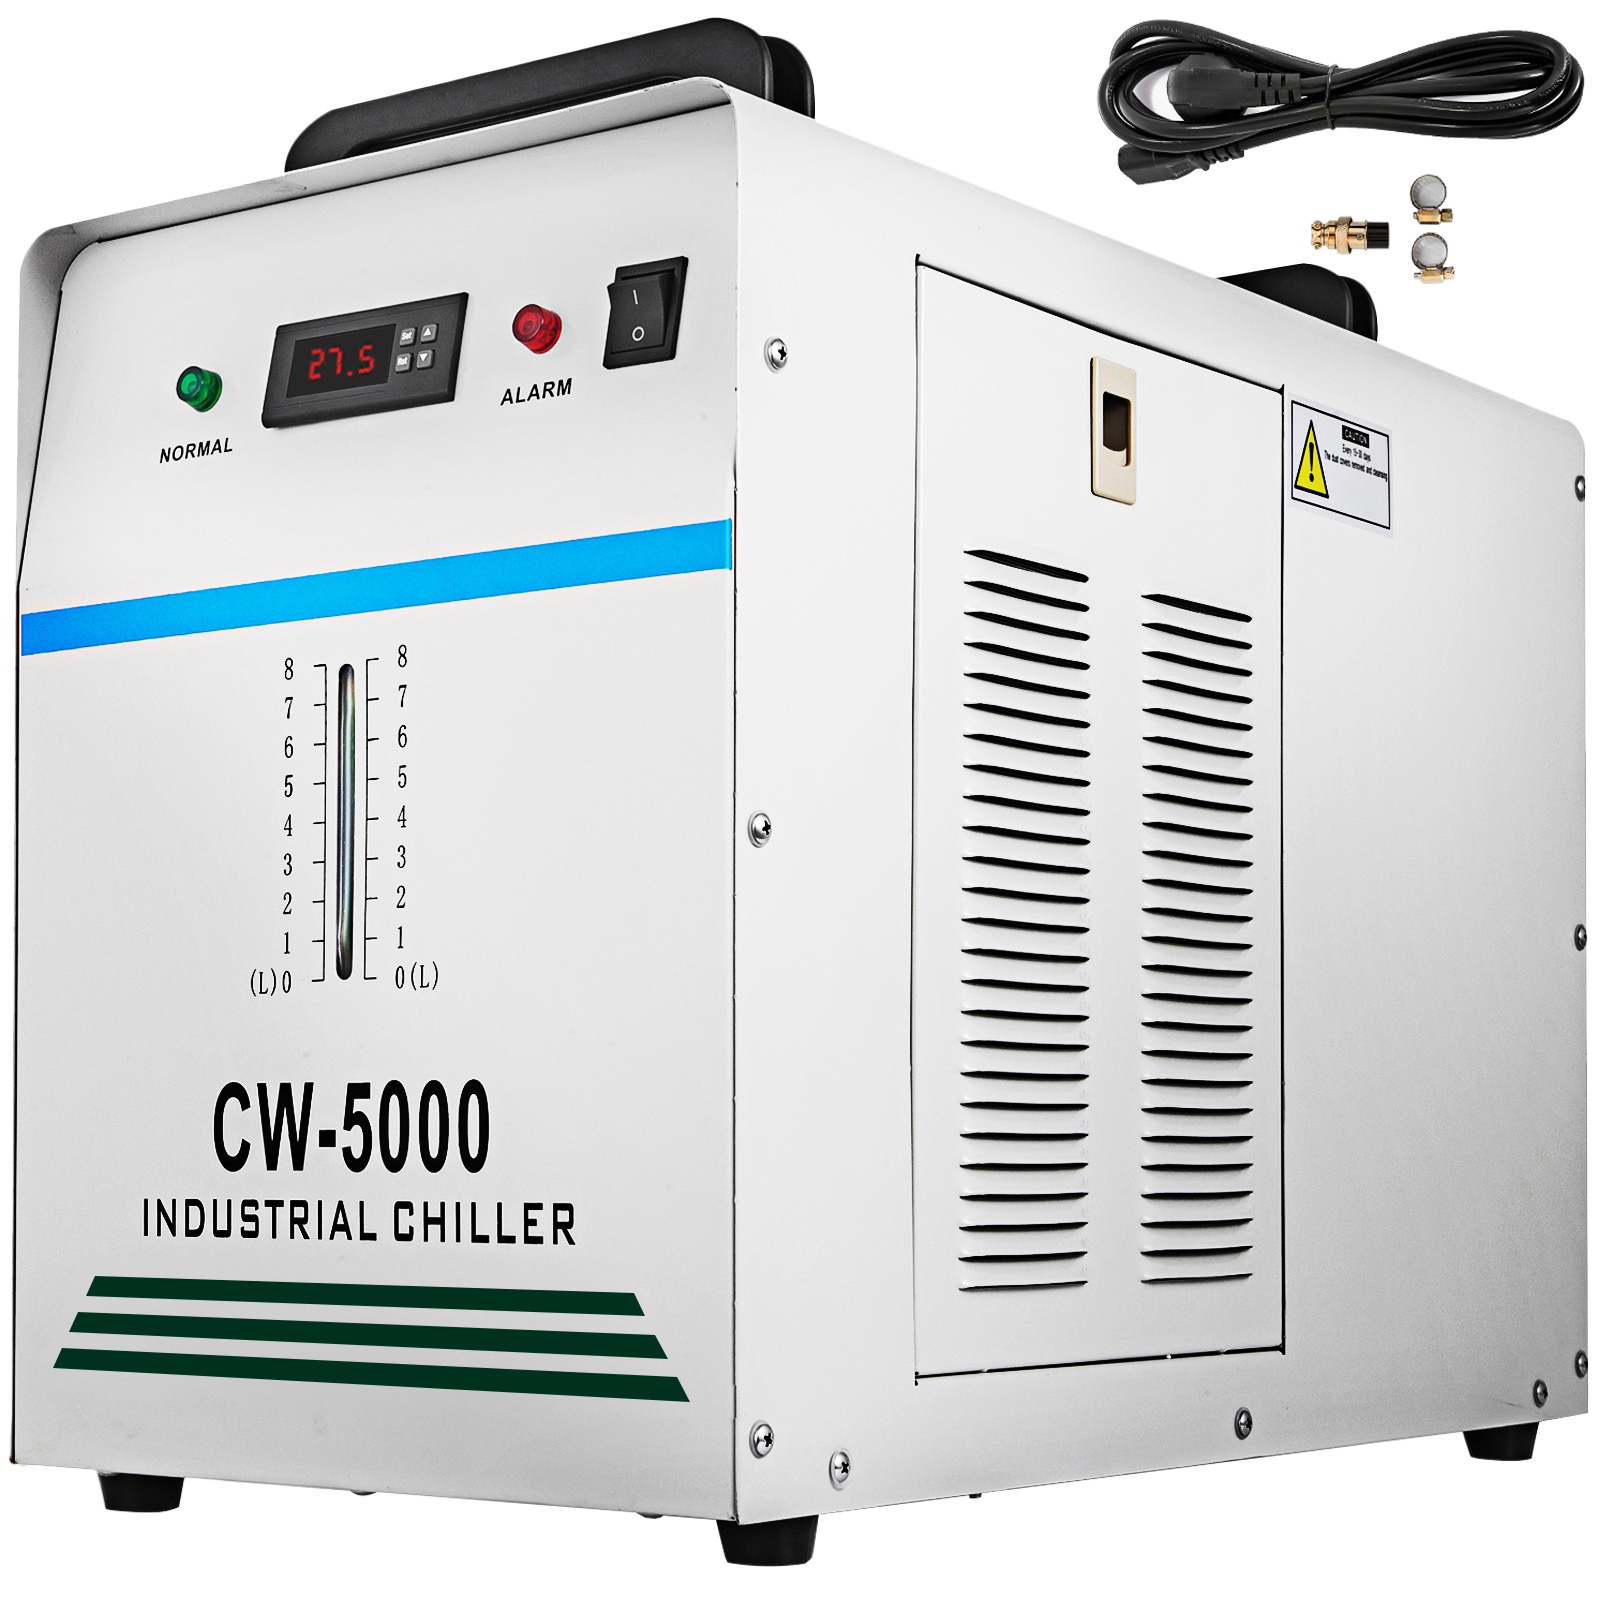 9L CW-3000 Industrieller Wasserkühler für Lasergravurmaschinen